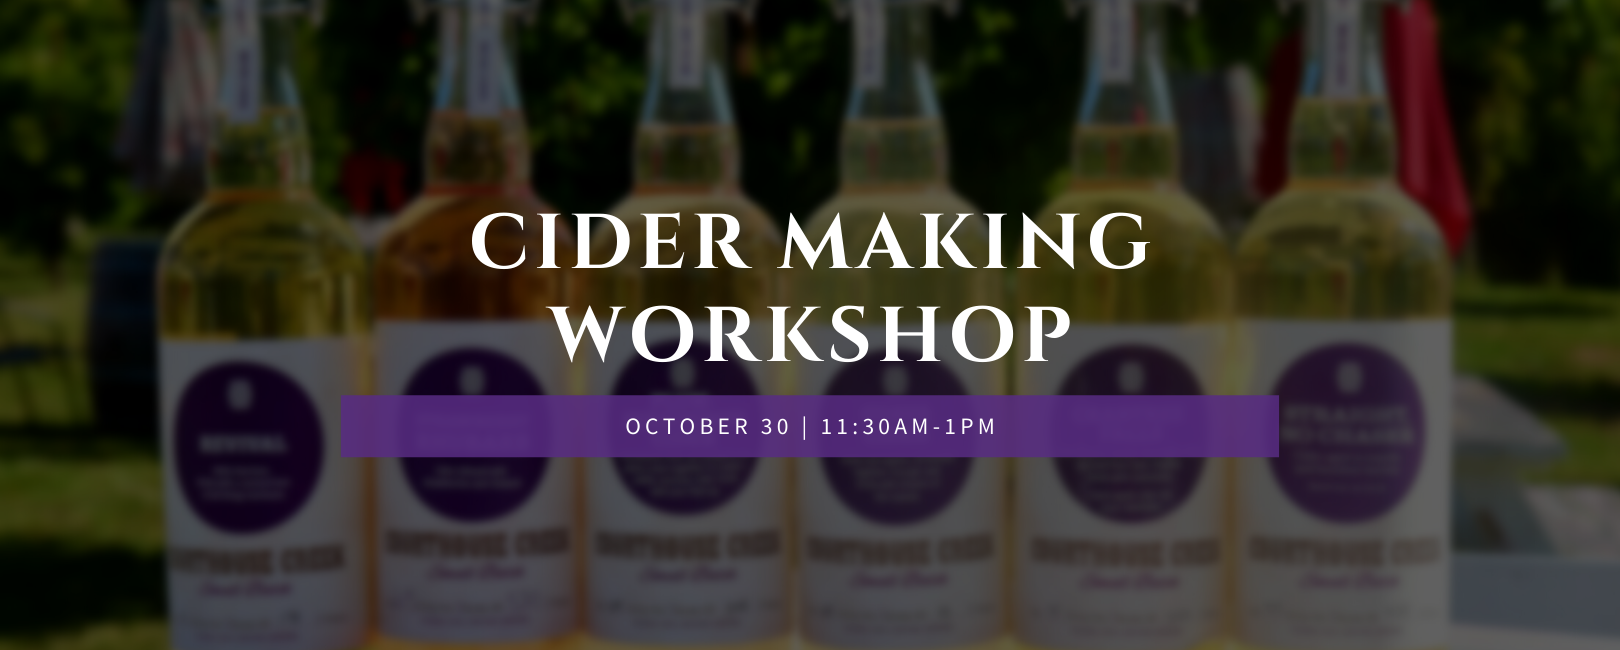 Cider Making Workshop Web (1620 x 650 px) (1)